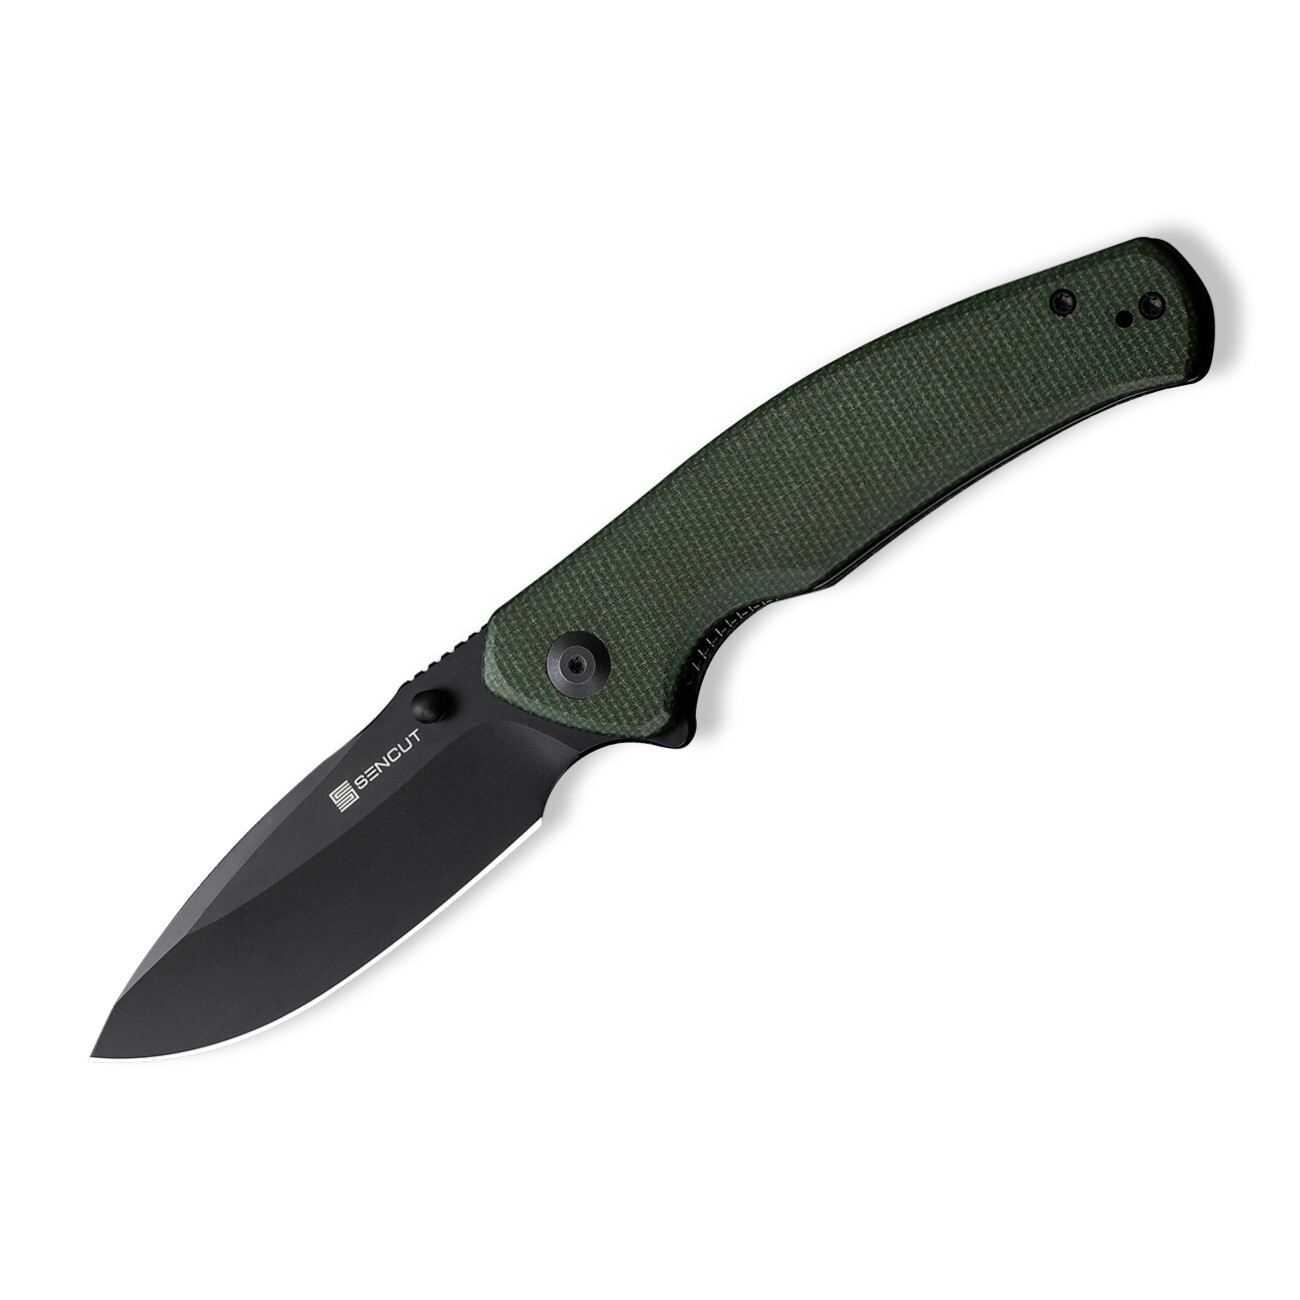 Складной нож Sencut Slashkin, сталь D2, рукоять canvas micarta, black/green